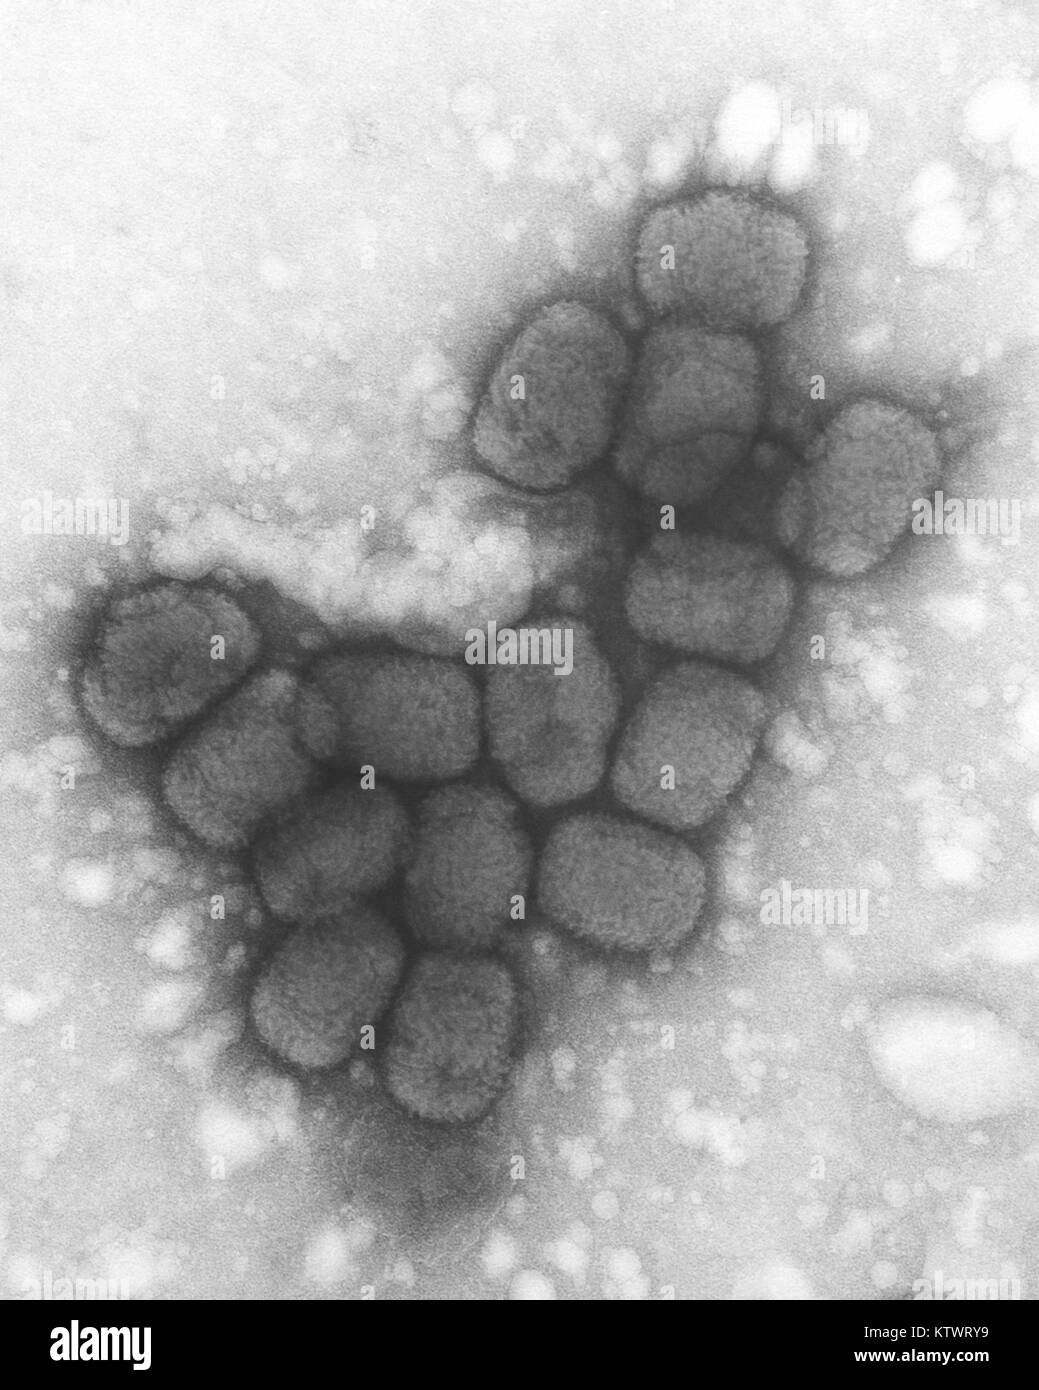 Eine Transmission Electron Micrograph (TEM) von Pockenviren über einen negativen Fleck Technik, 1975. Sie PHIL 10144 für Eine eingefärbte Version dieses schwarz-weiß-Bild. Pocken ist eine gefährliche, hochansteckende, und manchmal tödliche Infektionskrankheit. Es gibt keine spezifische Behandlung für Pocken die Krankheit, und der einzige Vorbeugung ist die Impfung. Bild mit freundlicher Genehmigung von CDC/Dr. Fred Murphy. Stockfoto